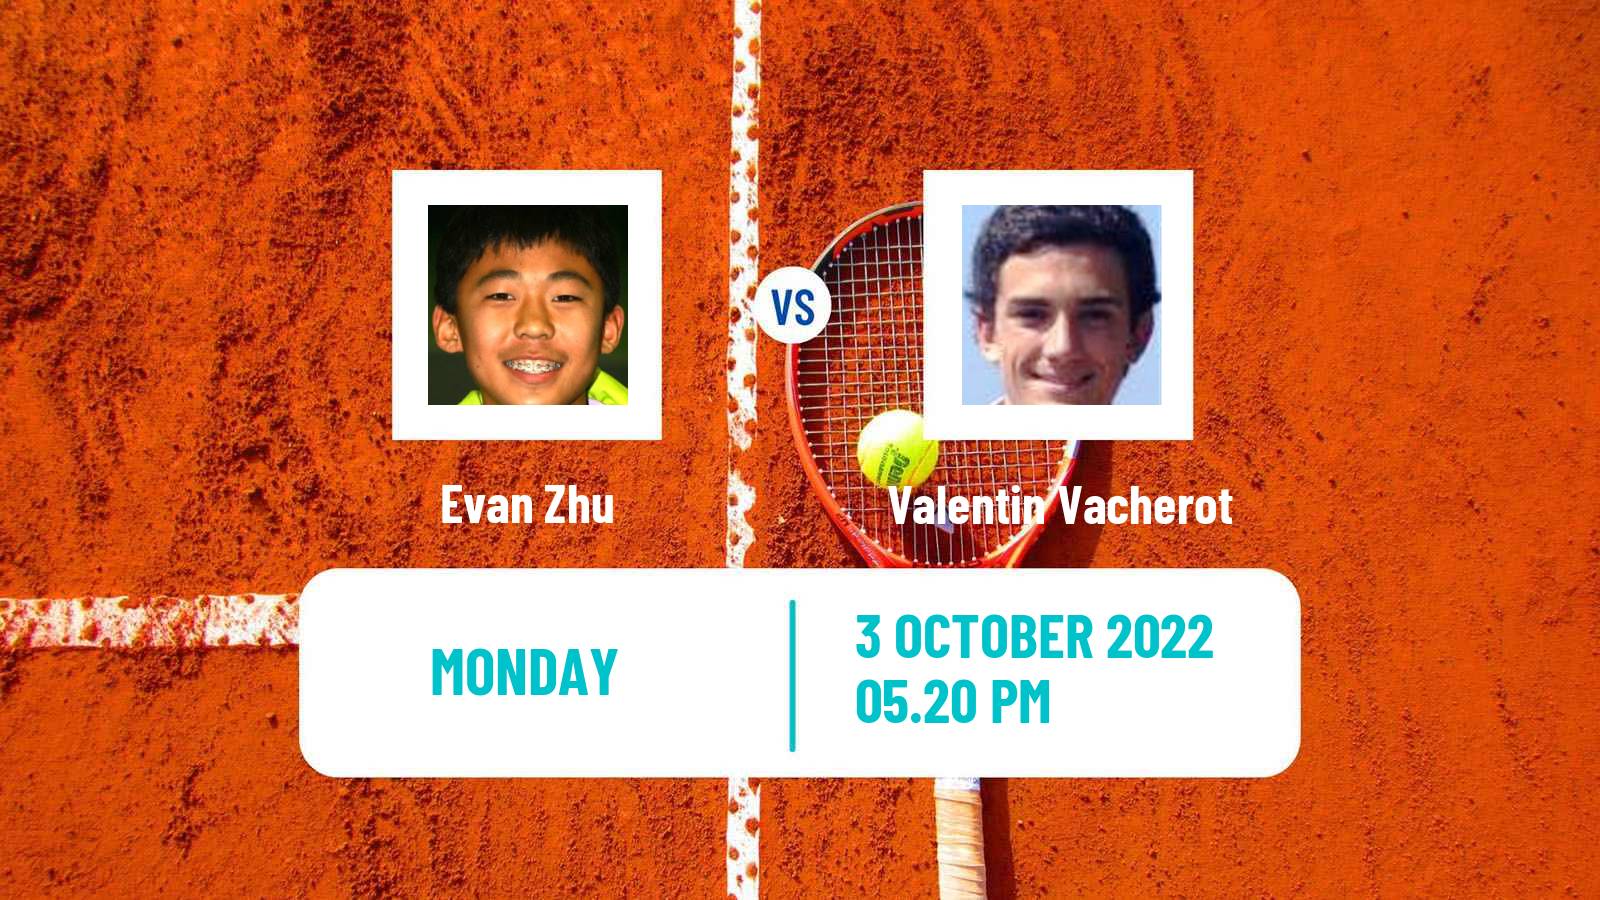 Tennis ATP Challenger Evan Zhu - Valentin Vacherot